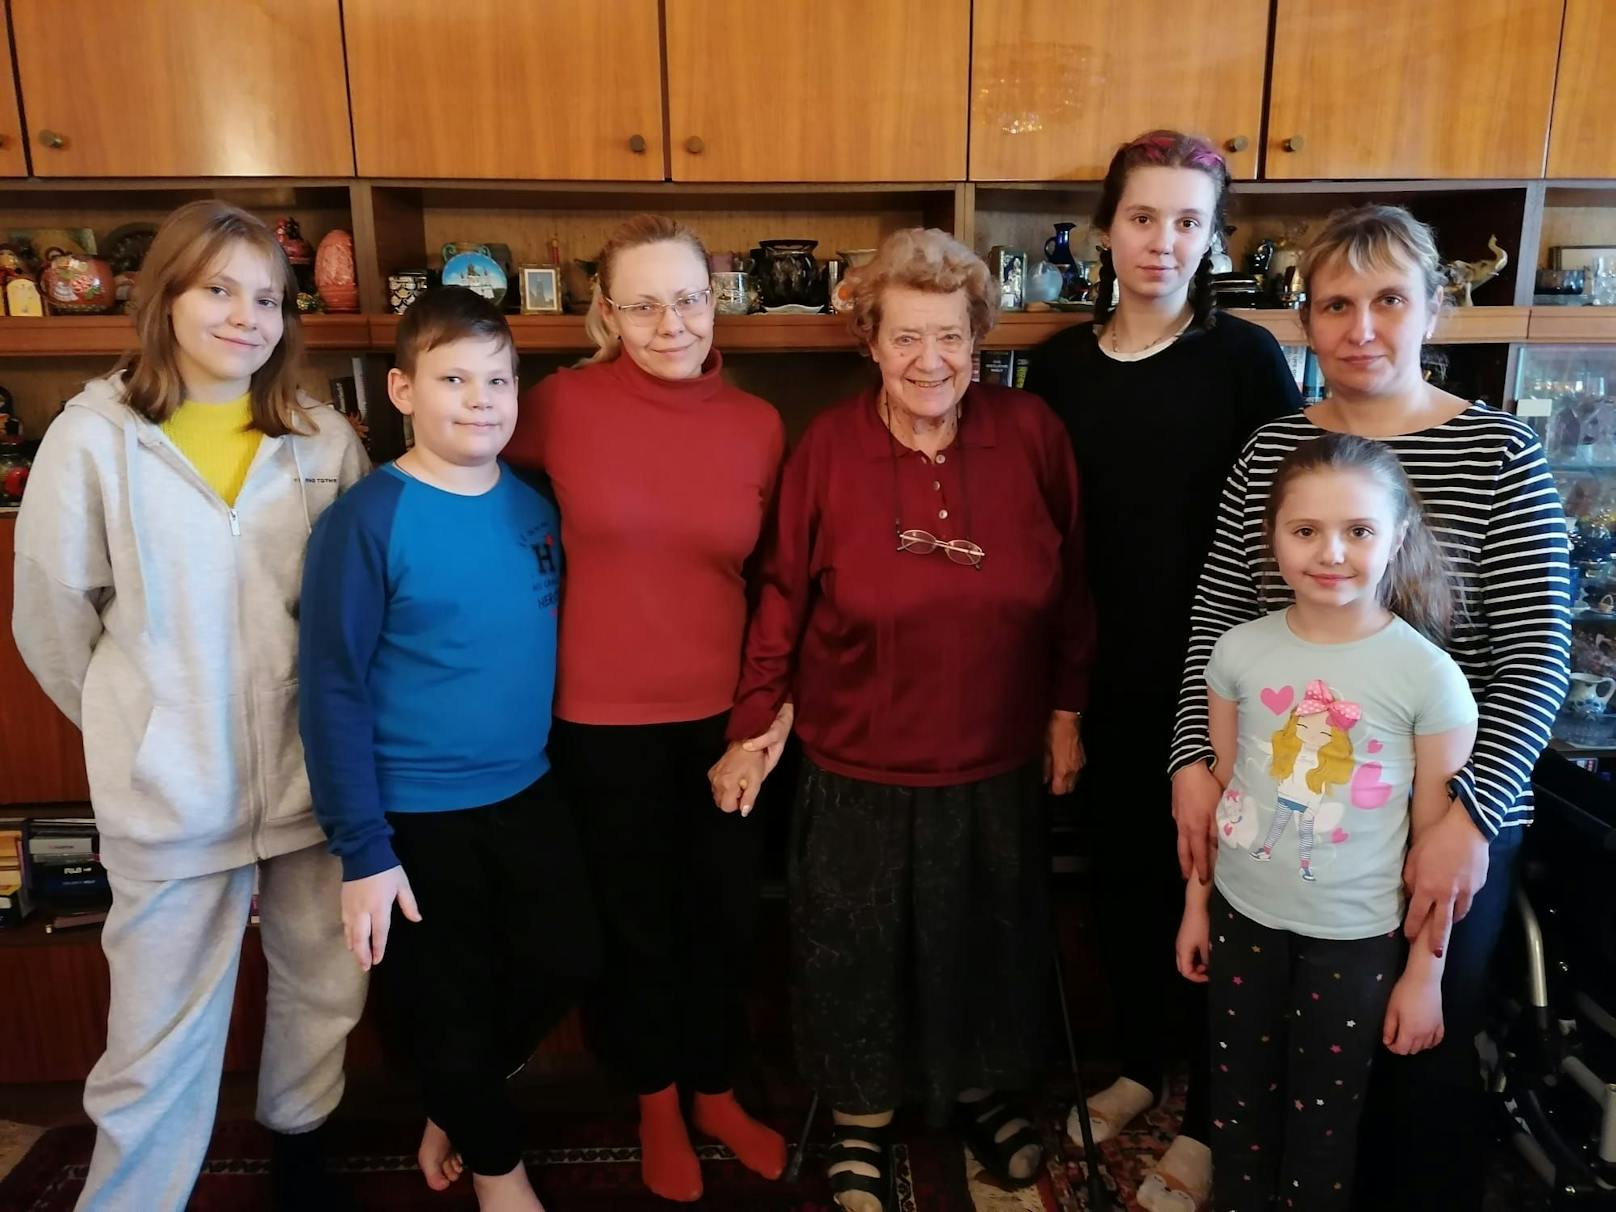 Helga Tippel (Mitte) hilft trotz ihrer 83 Jahre, wo sie nur kann. Derzeit leben zwei ukrainische Familien in ihrem Haus.